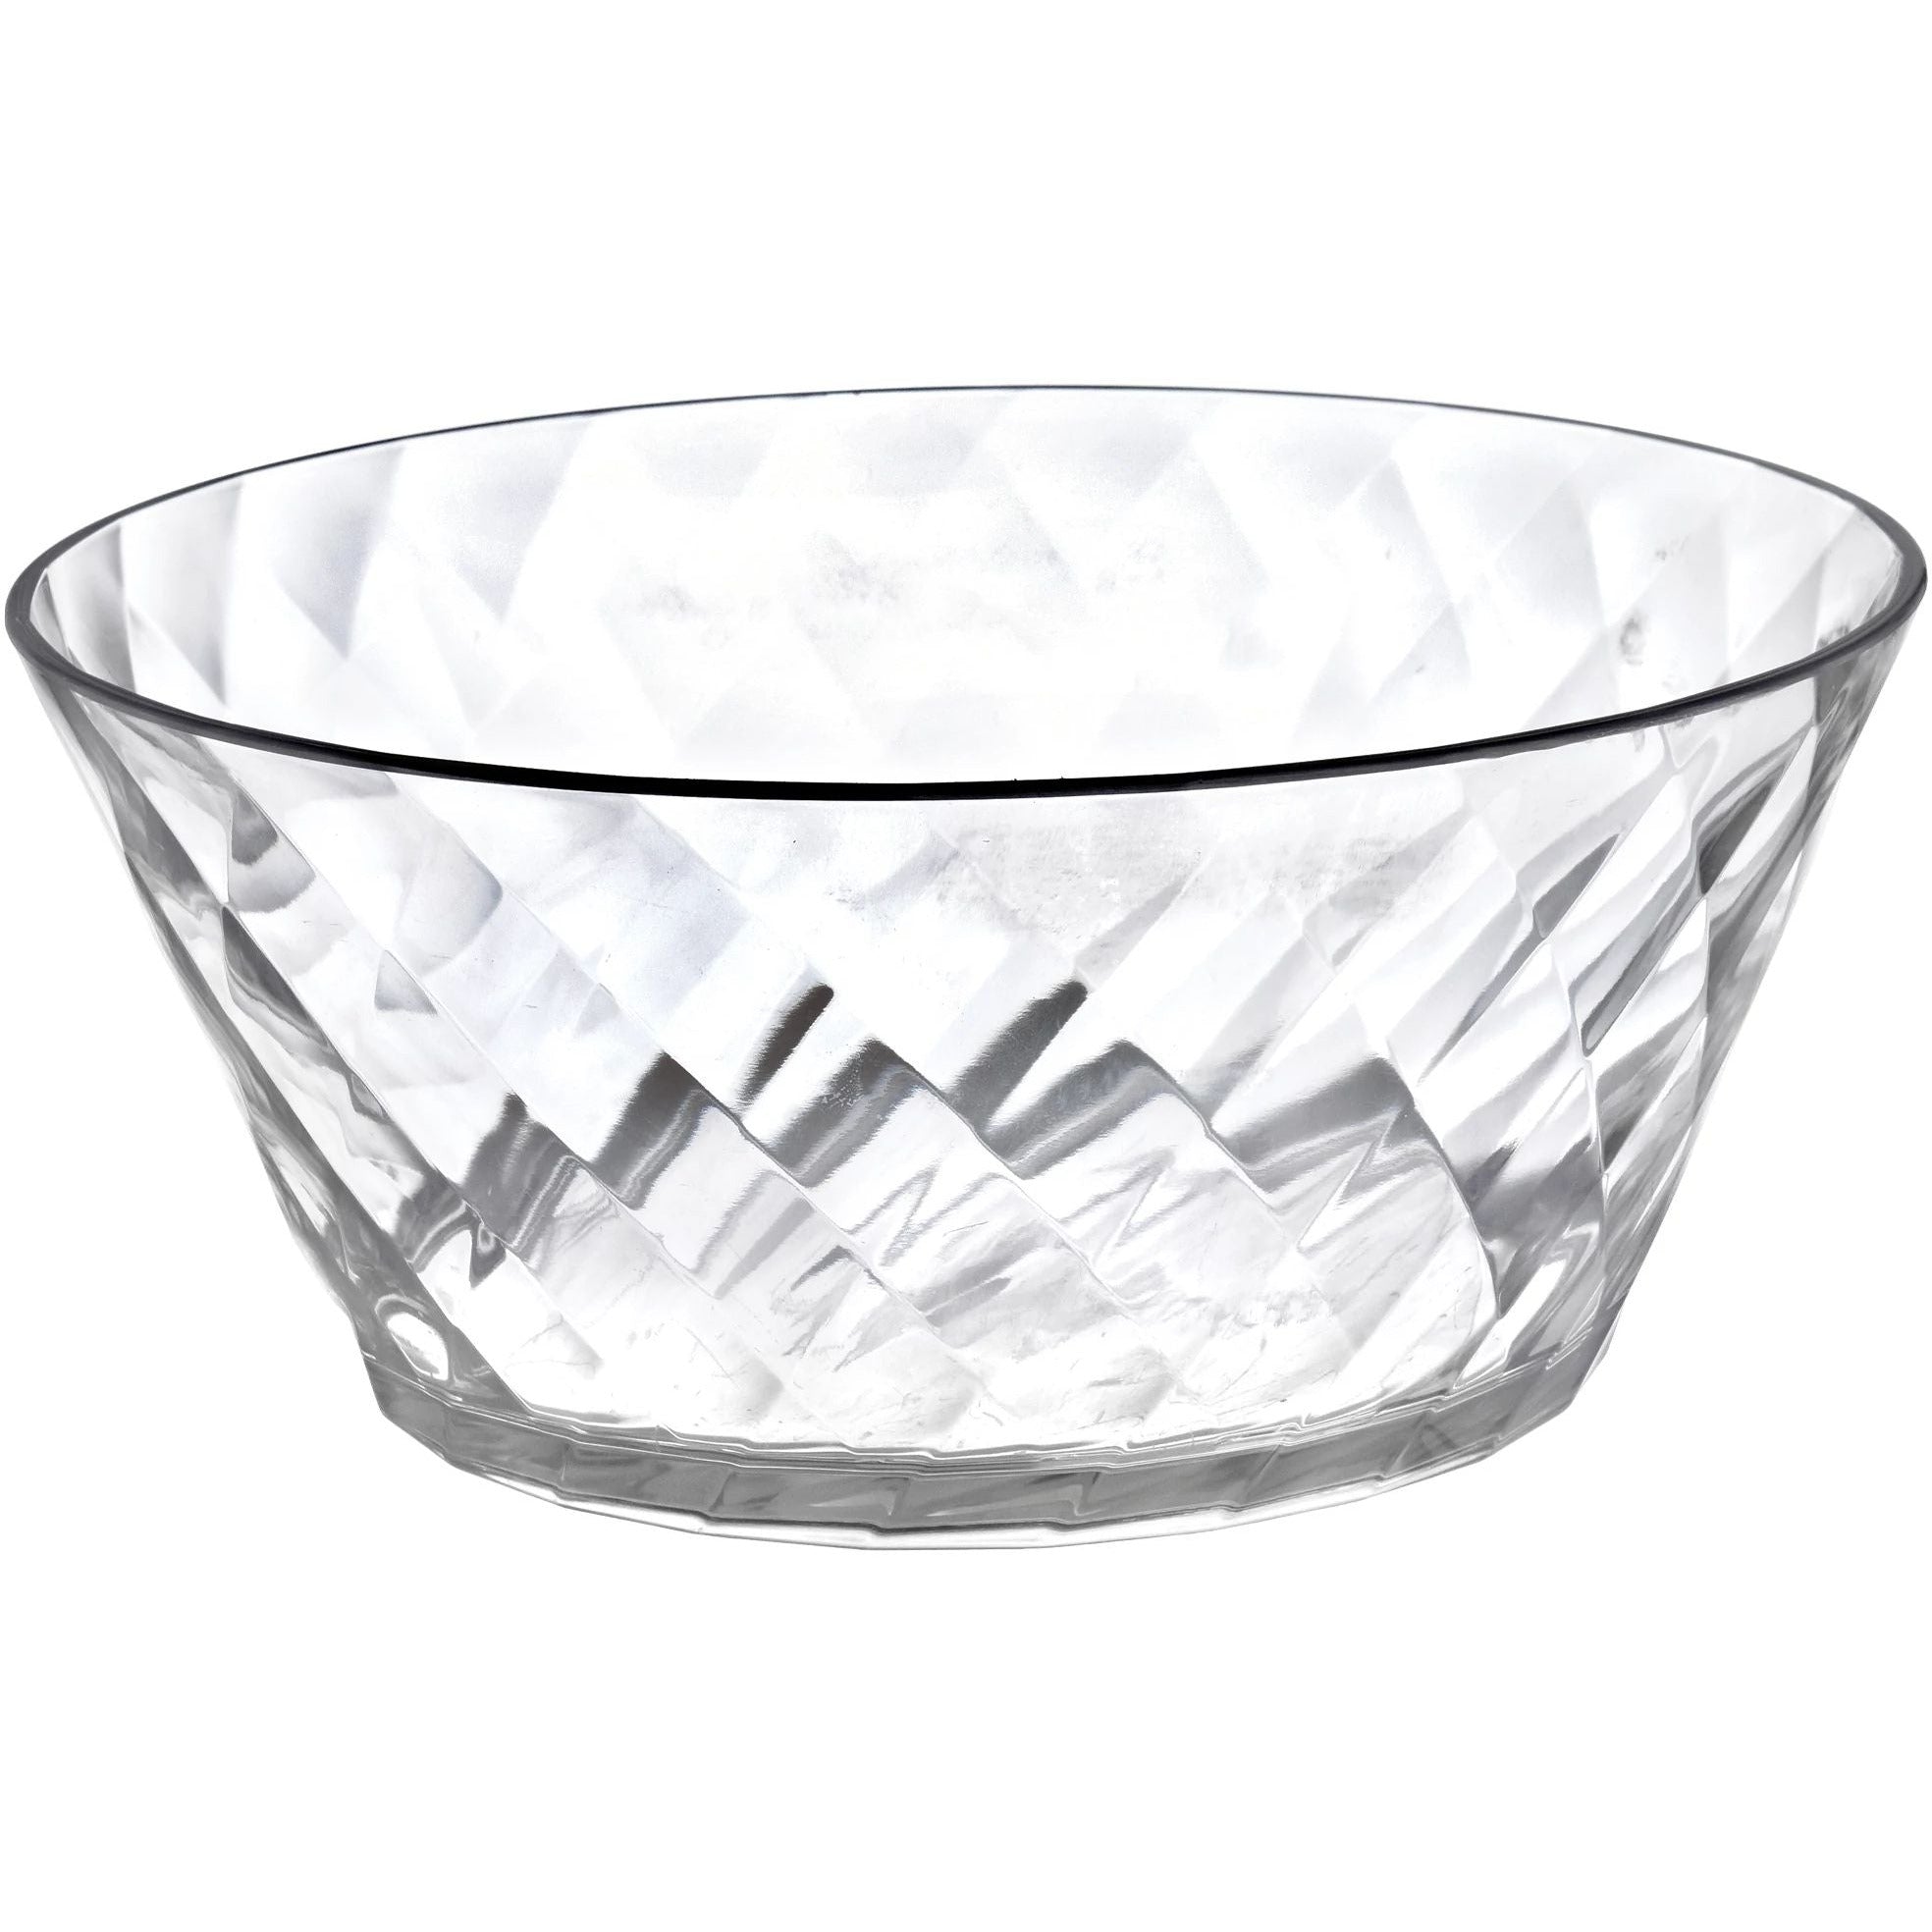 Amscan BASIC Large Bowl - Diamond Acrylic